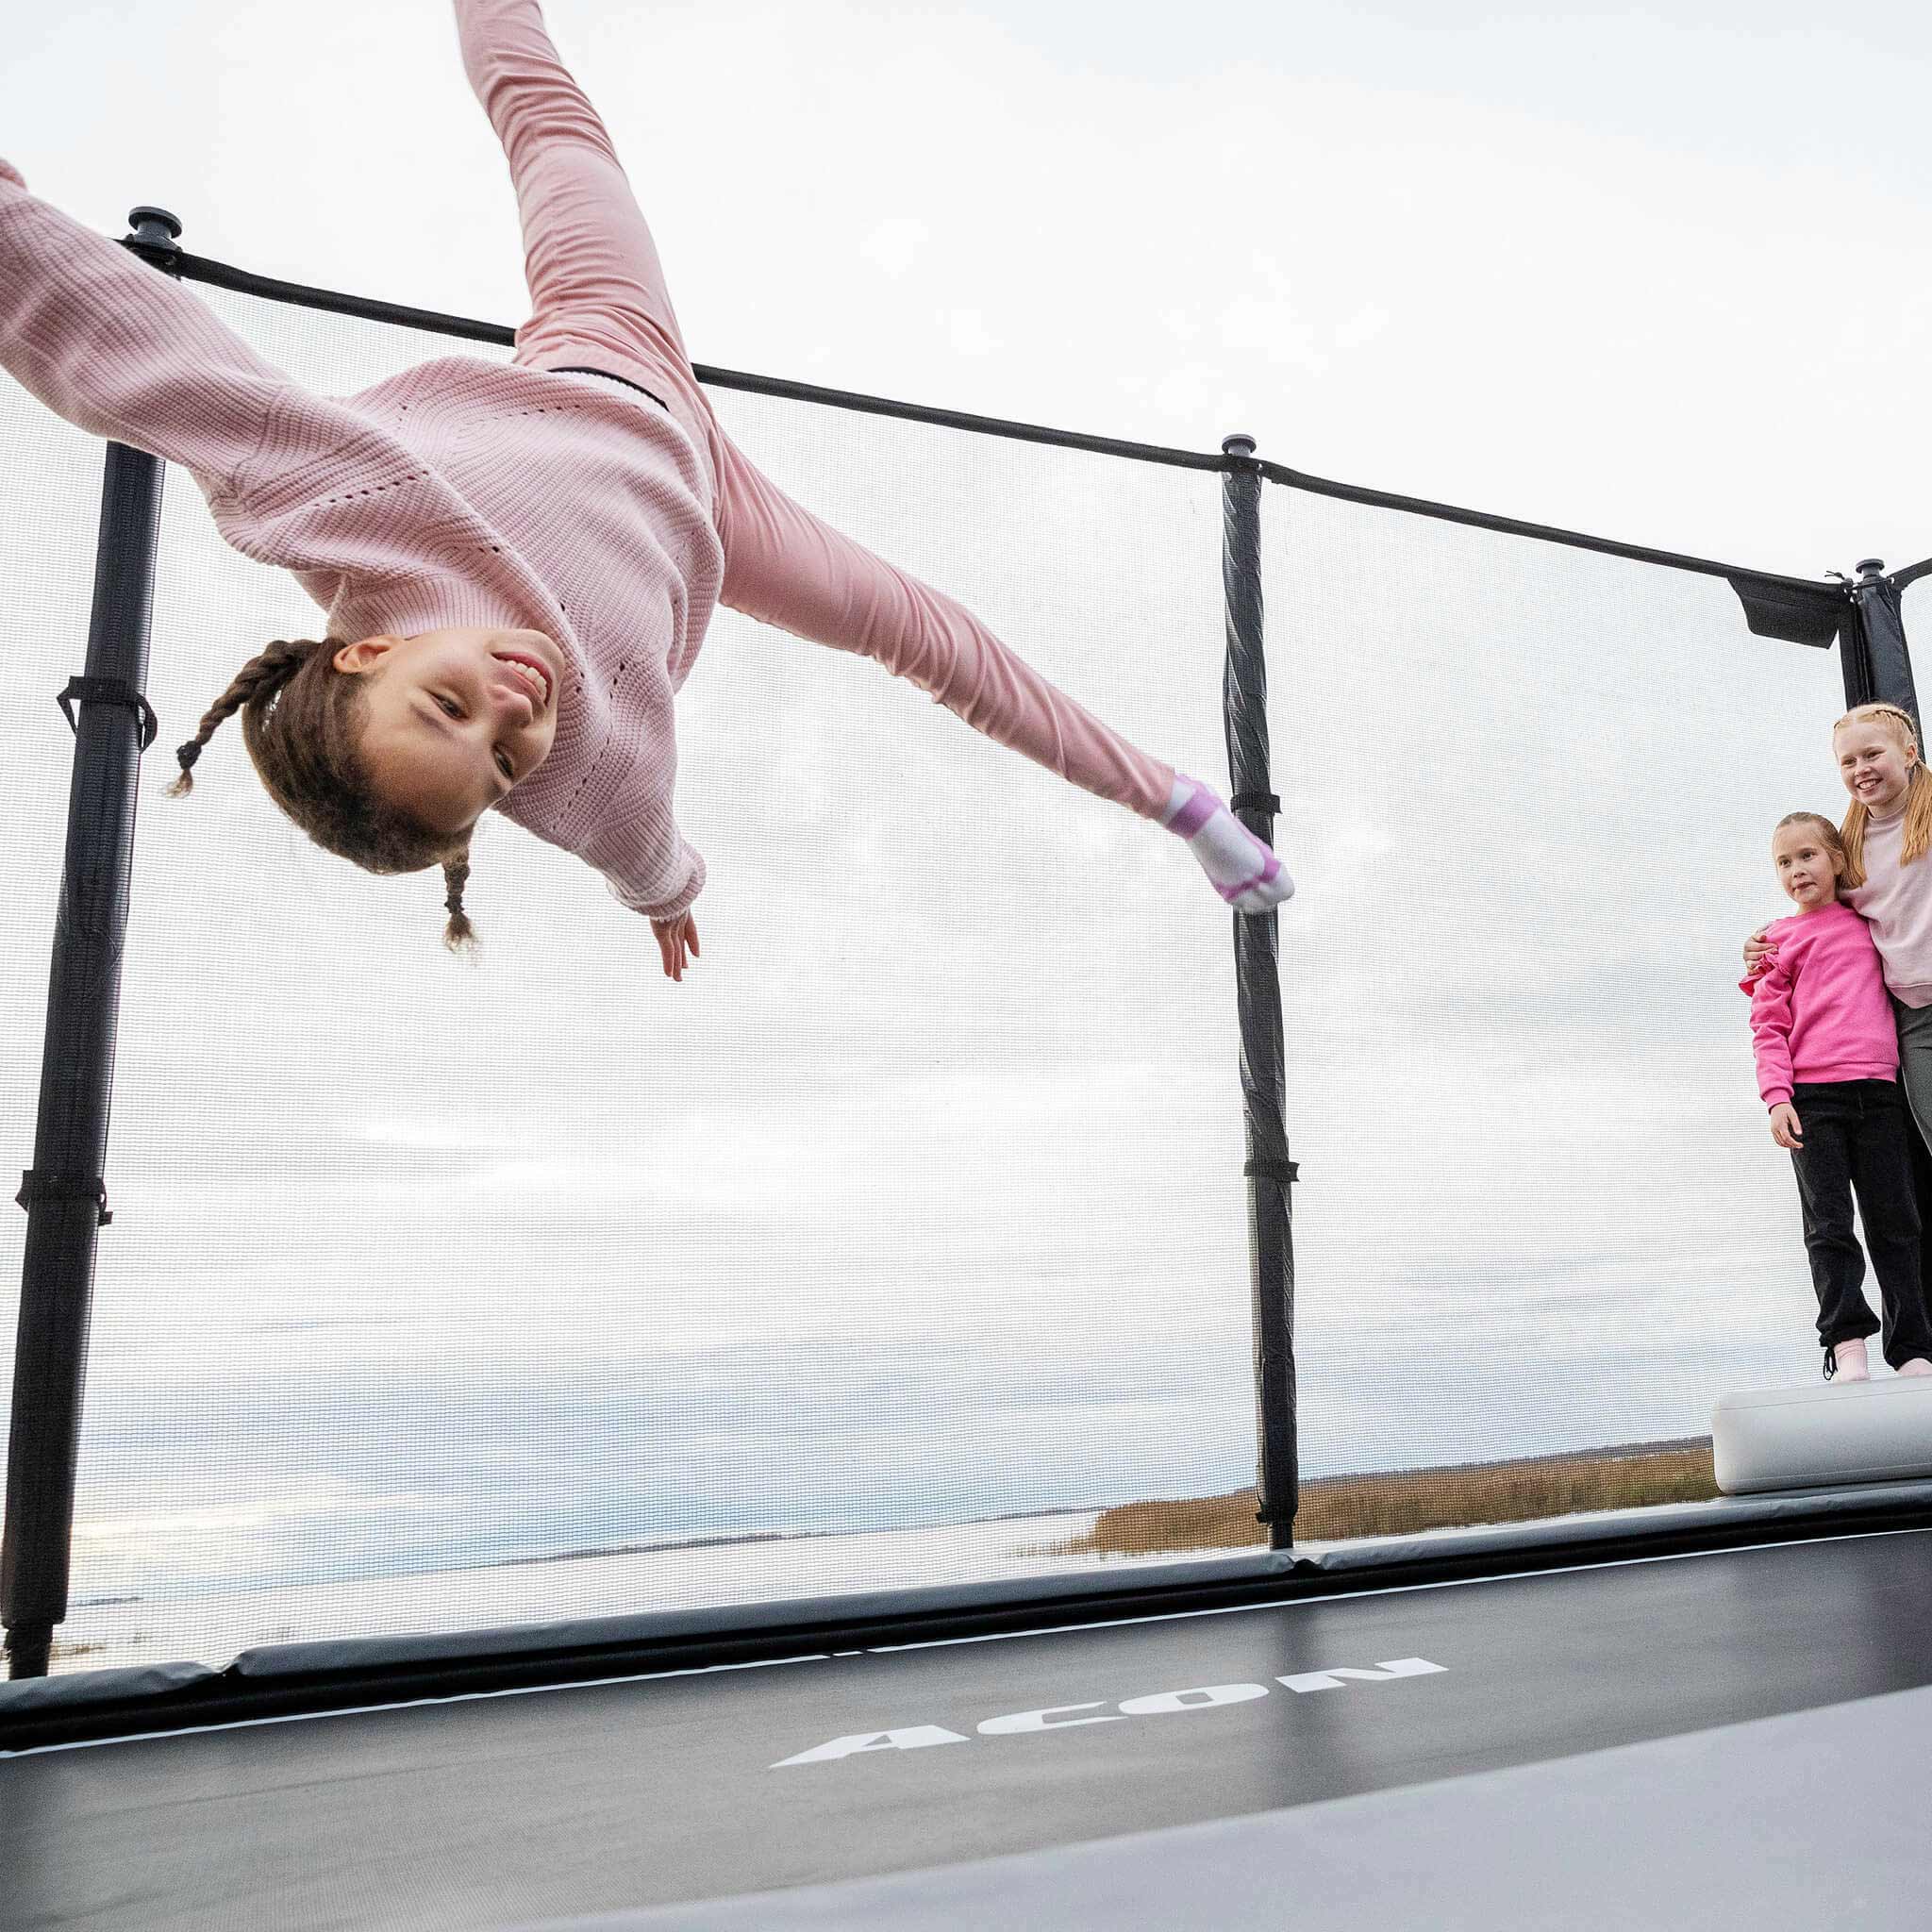 Une fille saute sur le trampoline Acon X, deux filles se tiennent debout et regardent.